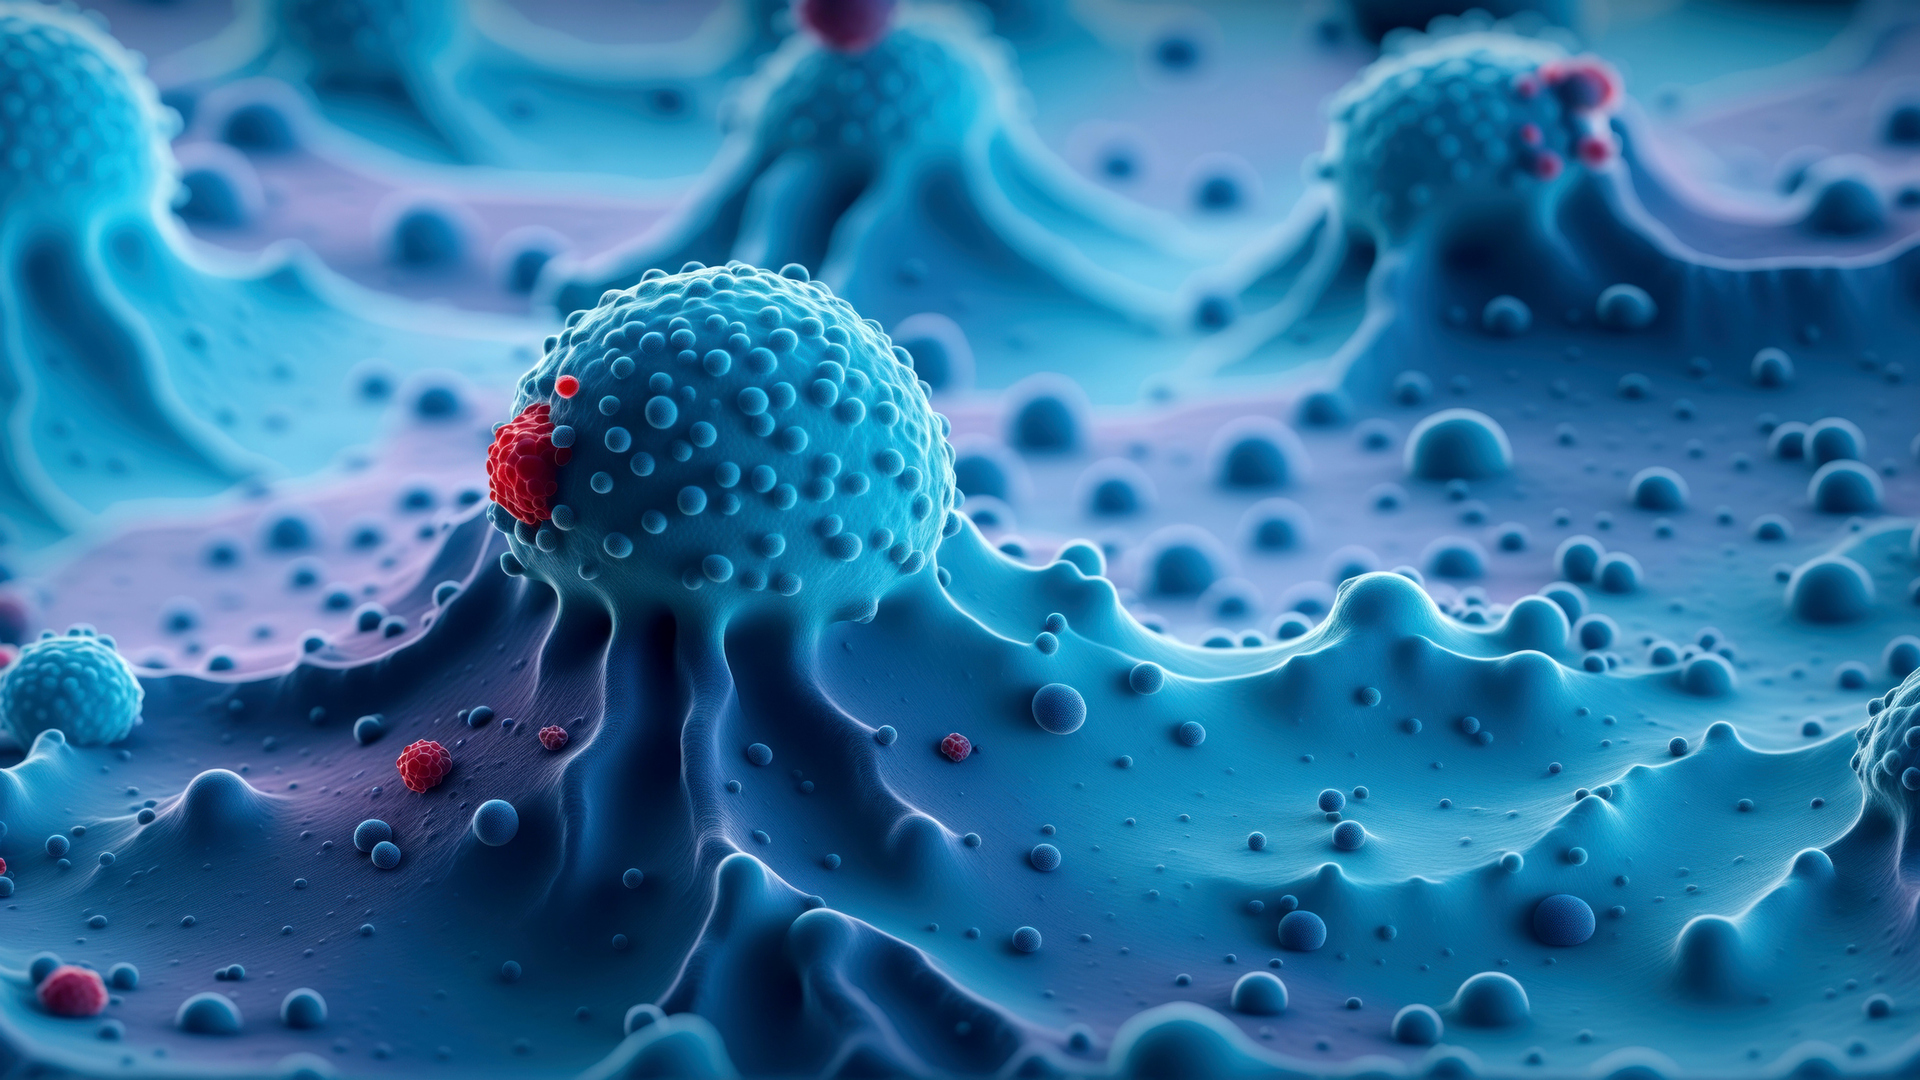 لأول مرة .. العلماء يستخدمون تقنية جديدة لرؤية الخلايا السرطانية من الداخل